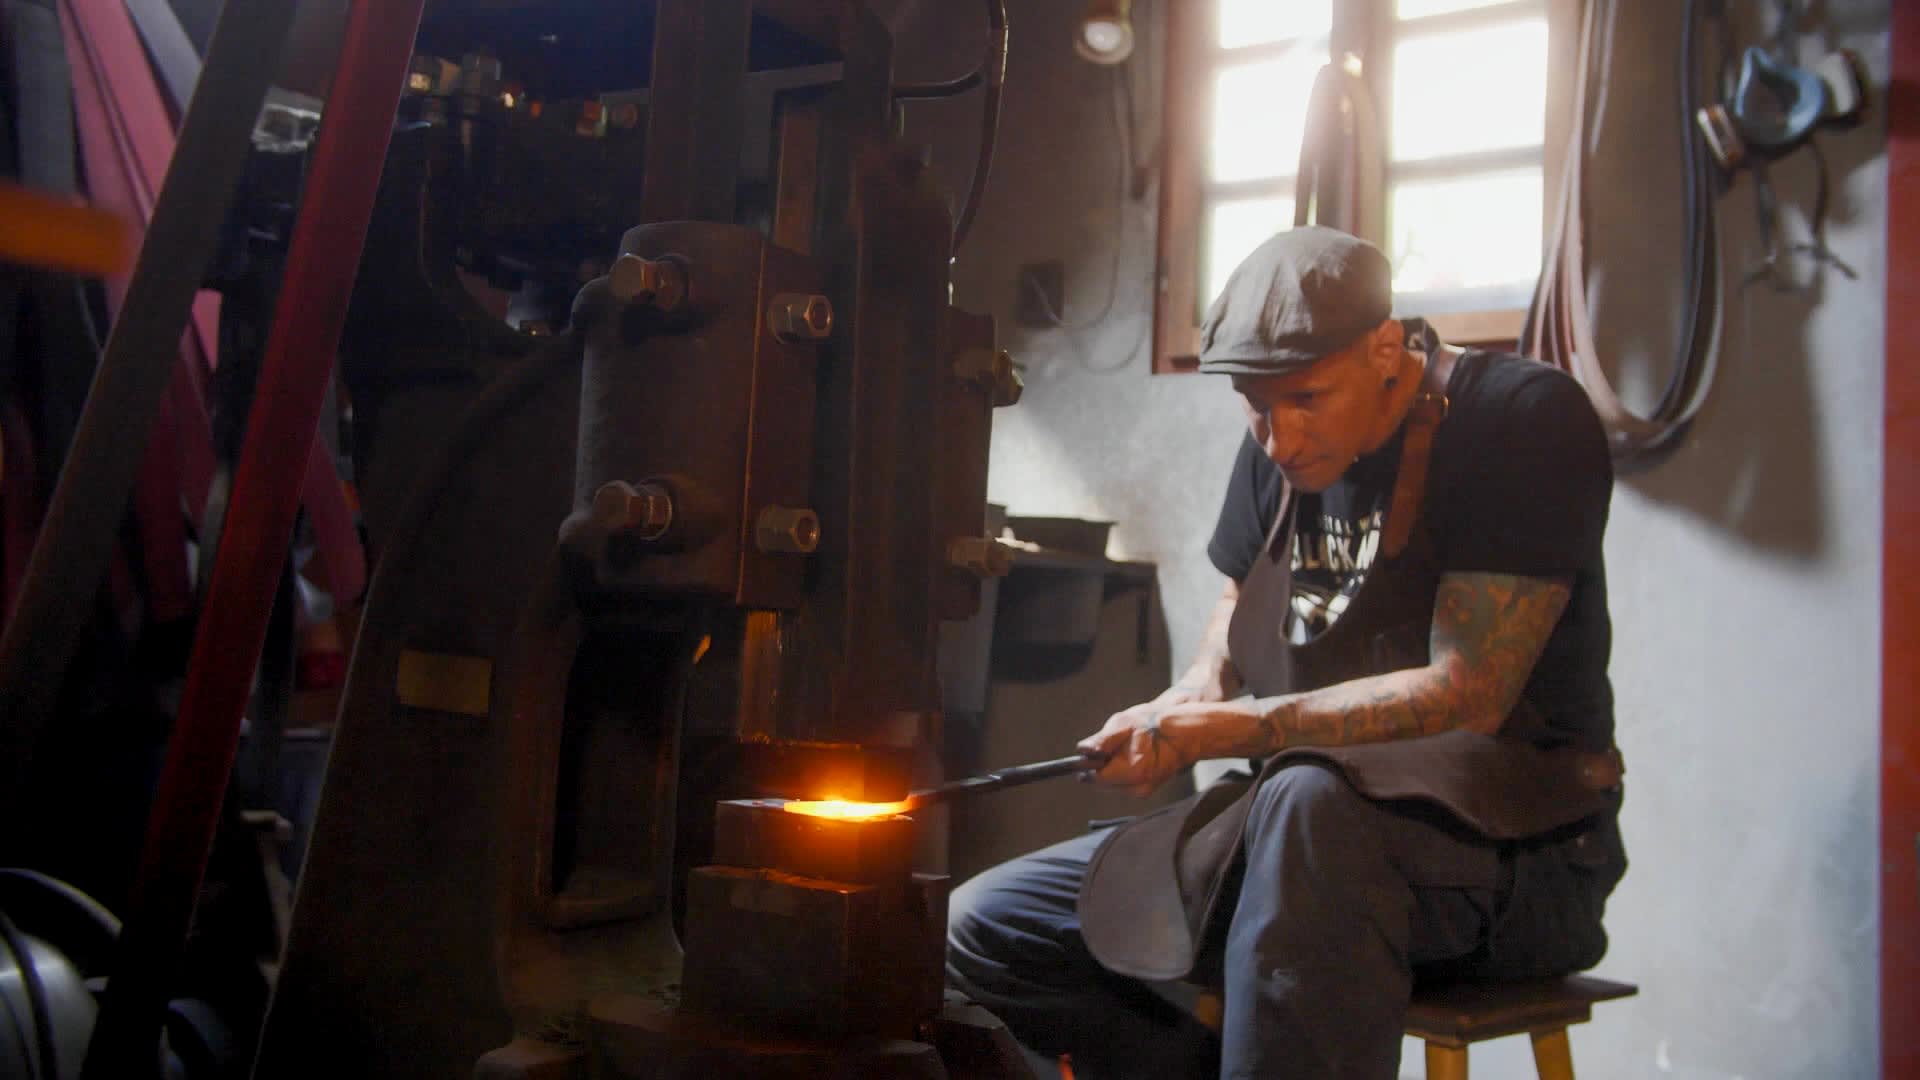 Čepele nože se vyrábí tradiční kovářskou metodou